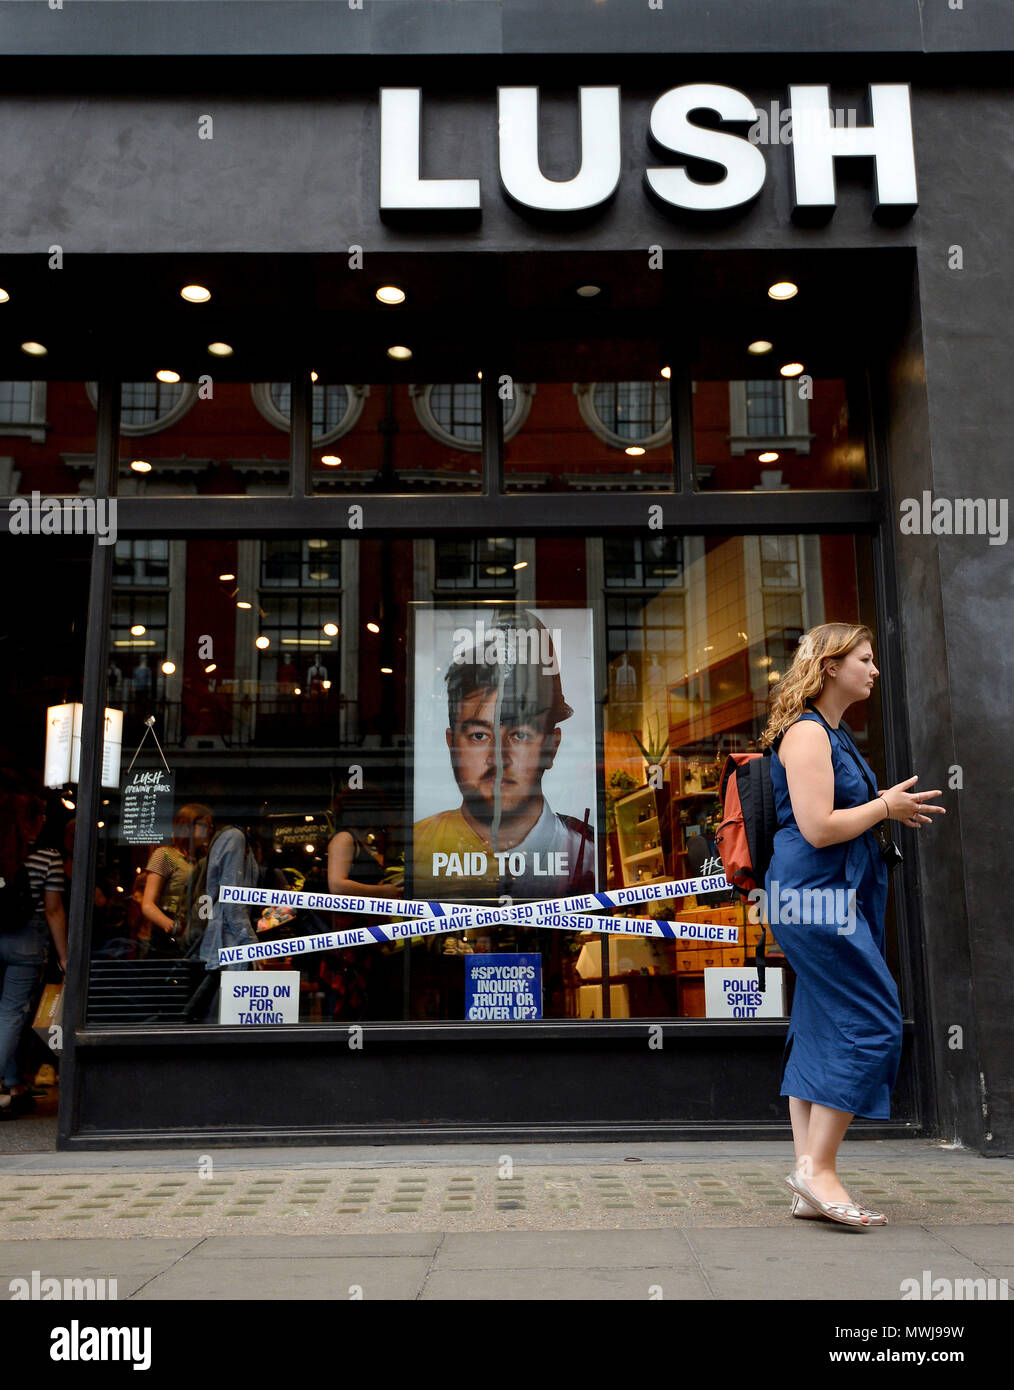 Ein Blick auf das üppige Geschäft in der Oxford Street, London, eines von über 100 Kosmetikgeschäften in der High Street, das aufgrund einer „abtrünnigen“ Kampagne, die Undercover-Polizeiarbeit kritisiert, mit Gegenreaktionen konfrontiert war. Stockfoto